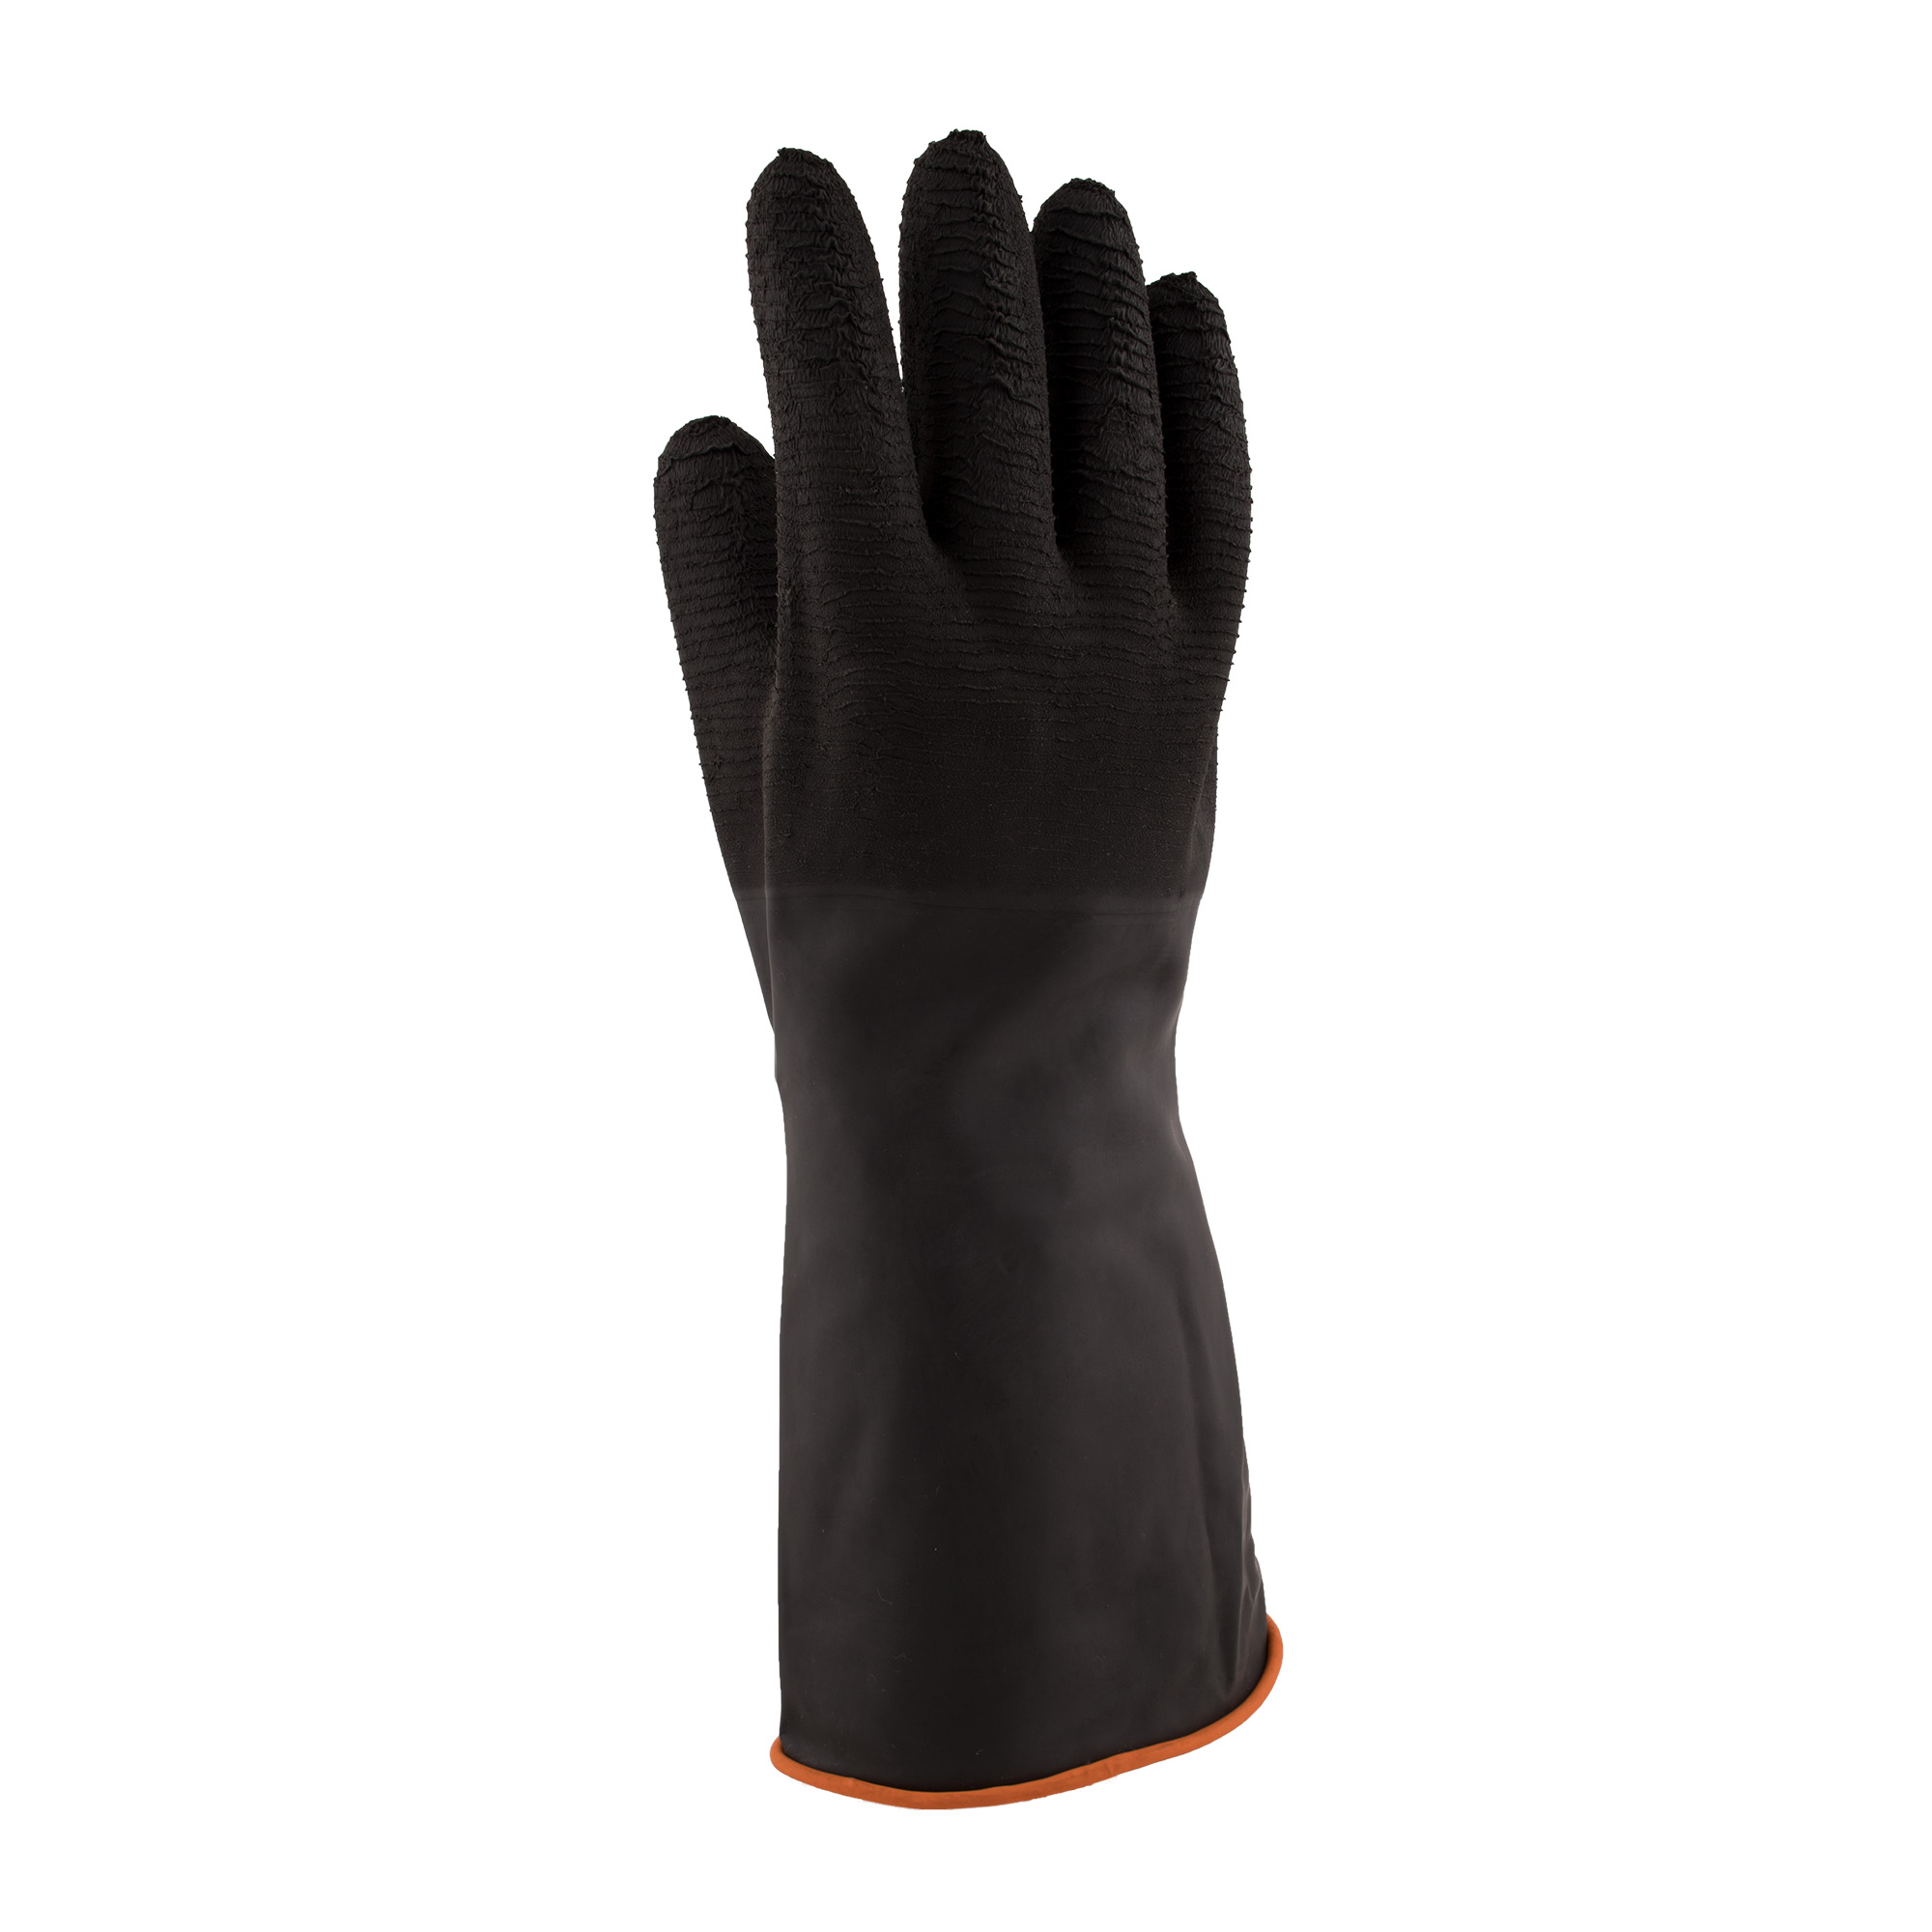 Rubber Crinkle Black Gloves 35cm Protekta Safety Gear